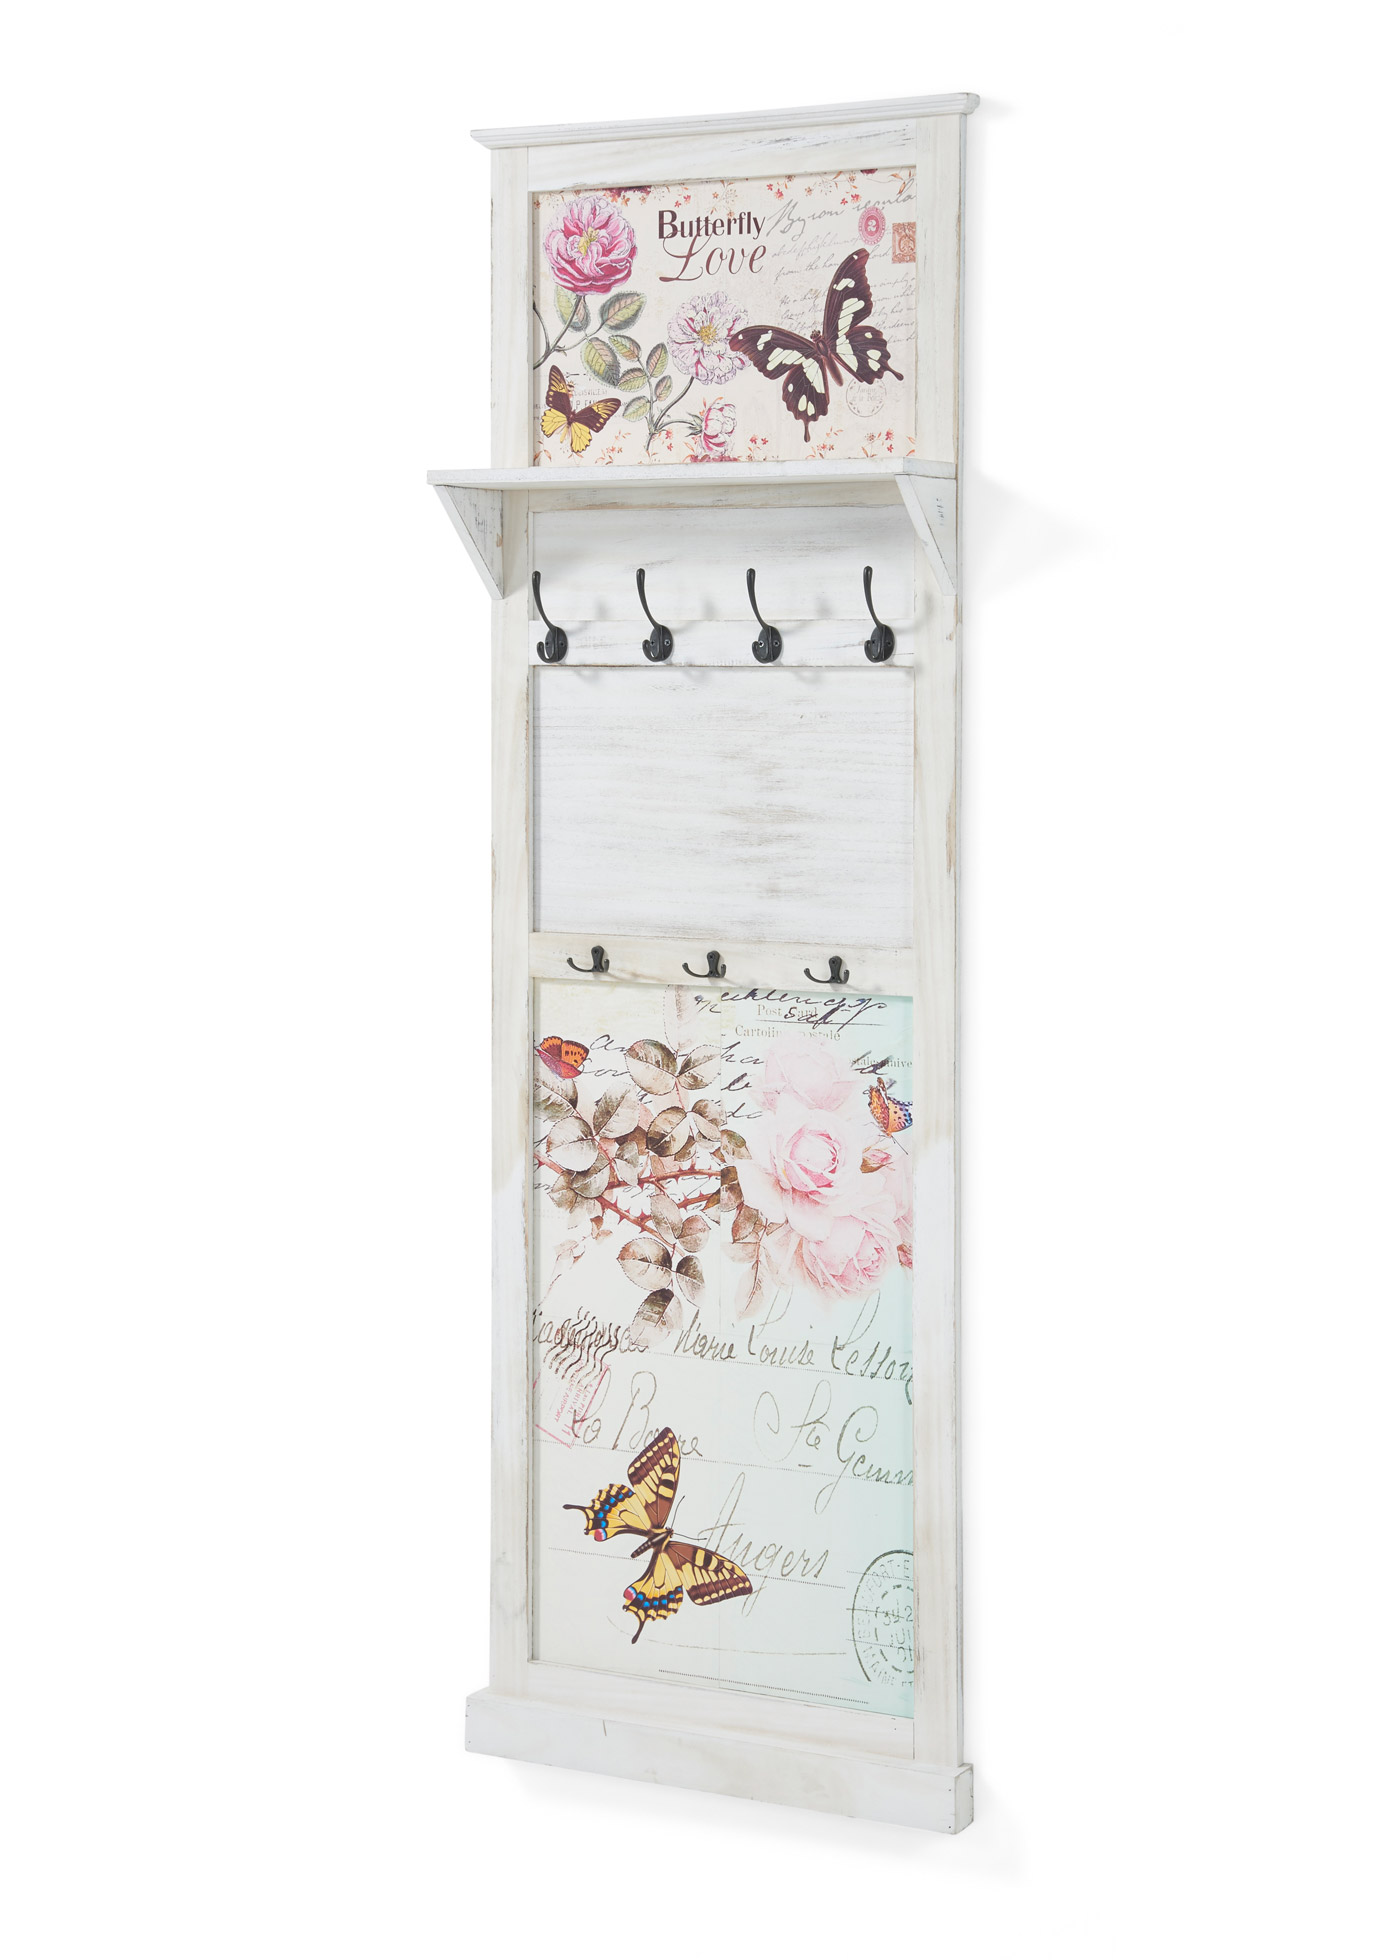 Garderobenpaneel mit Schmetterling-Design